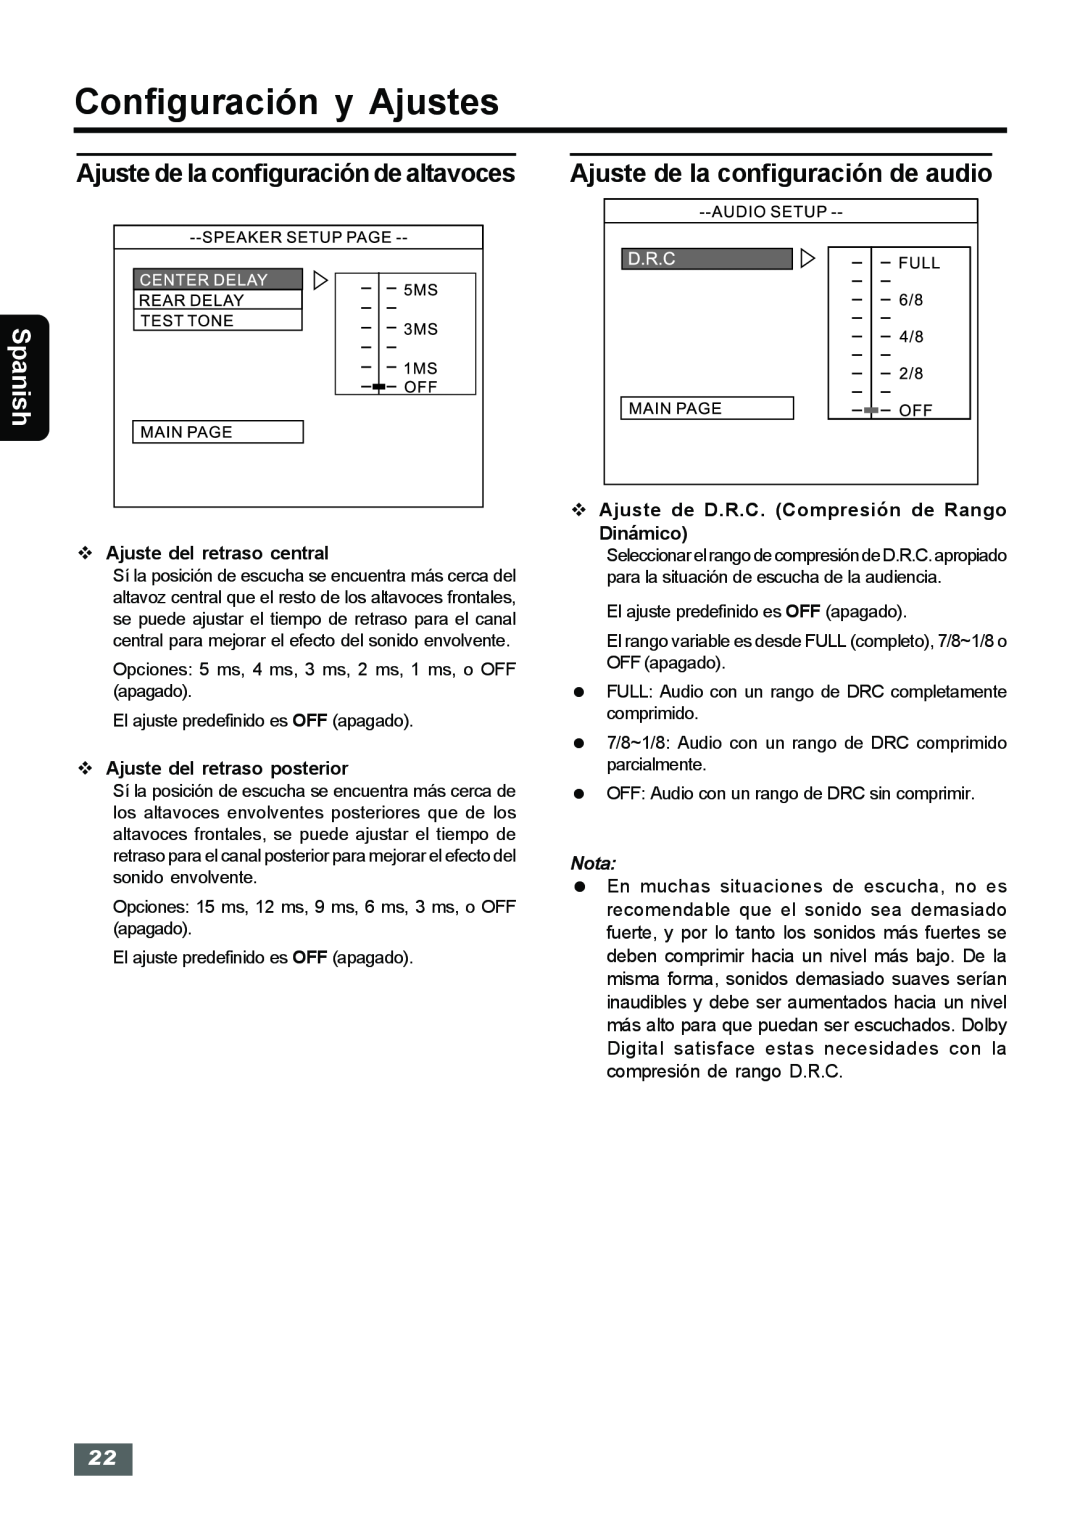 Insignia IS-HTIB102731 Ajuste de la configuración de altavoces, Ajuste de la configuración de audio, Spanish, Nota 